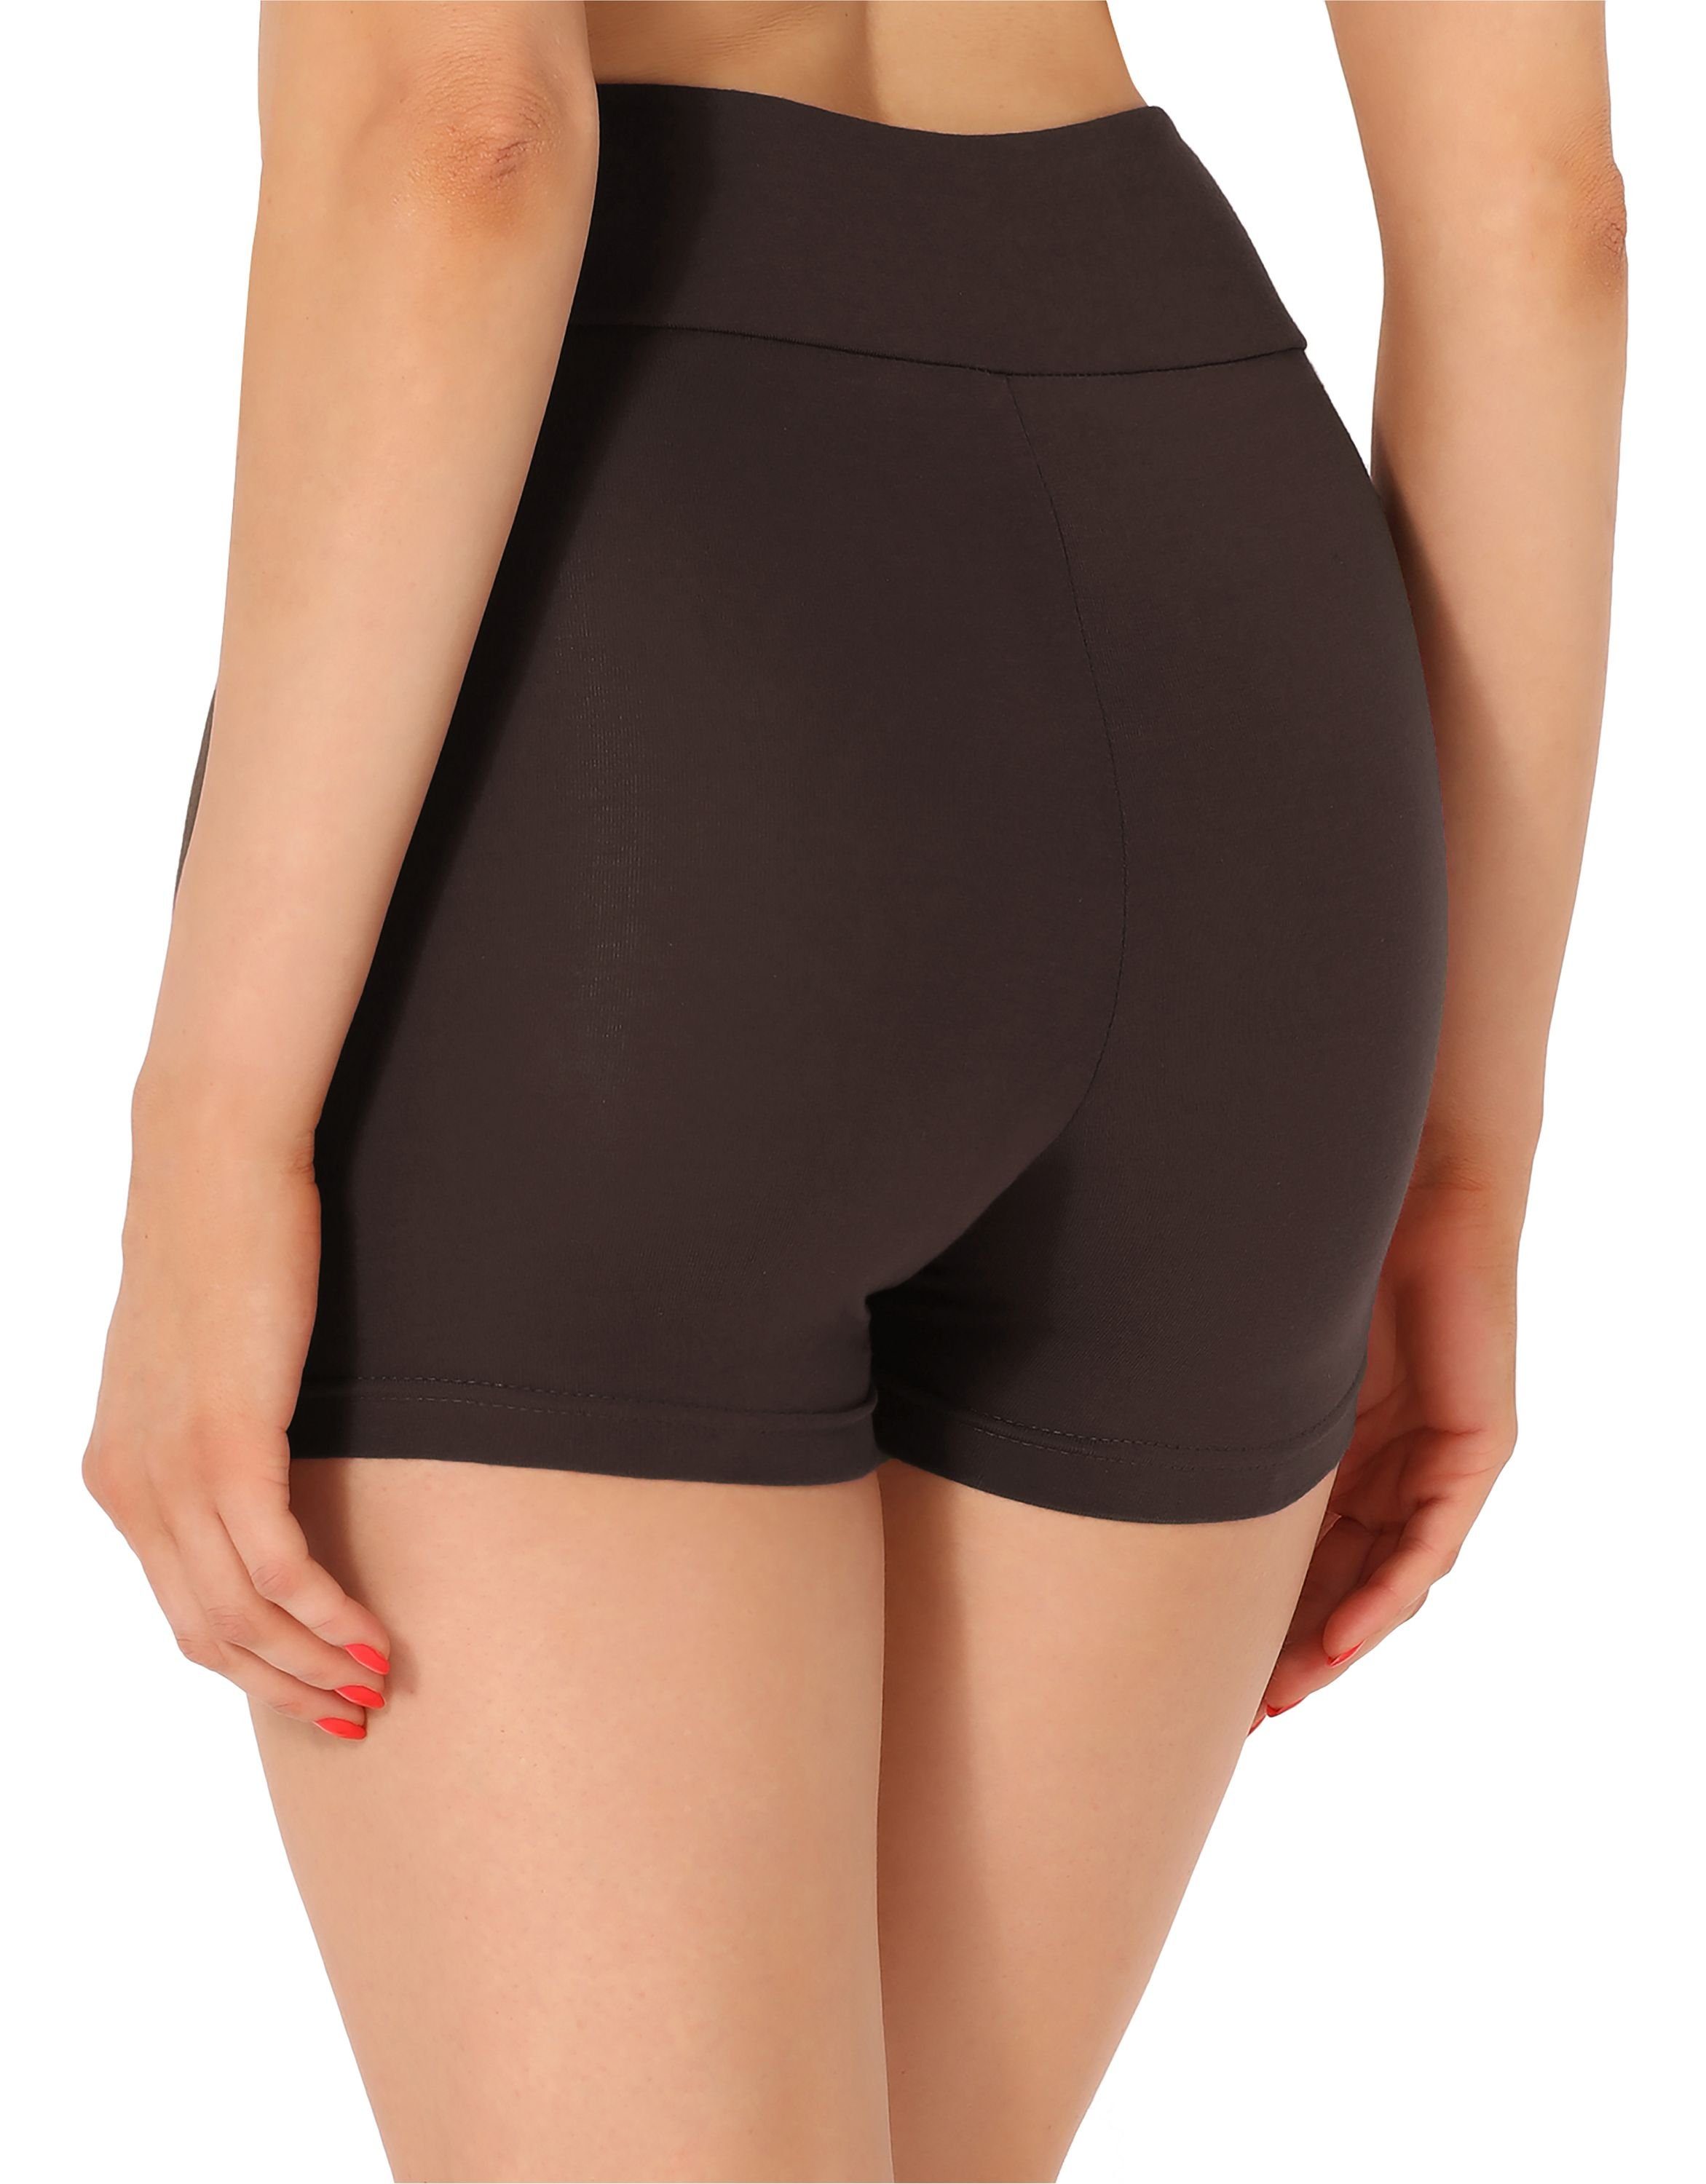 (1-tlg) Style Damen Unterhose kurze Boxershorts Hose Merry elastischer Radlerhose Shorts Bund Braun Leggings MS10-359